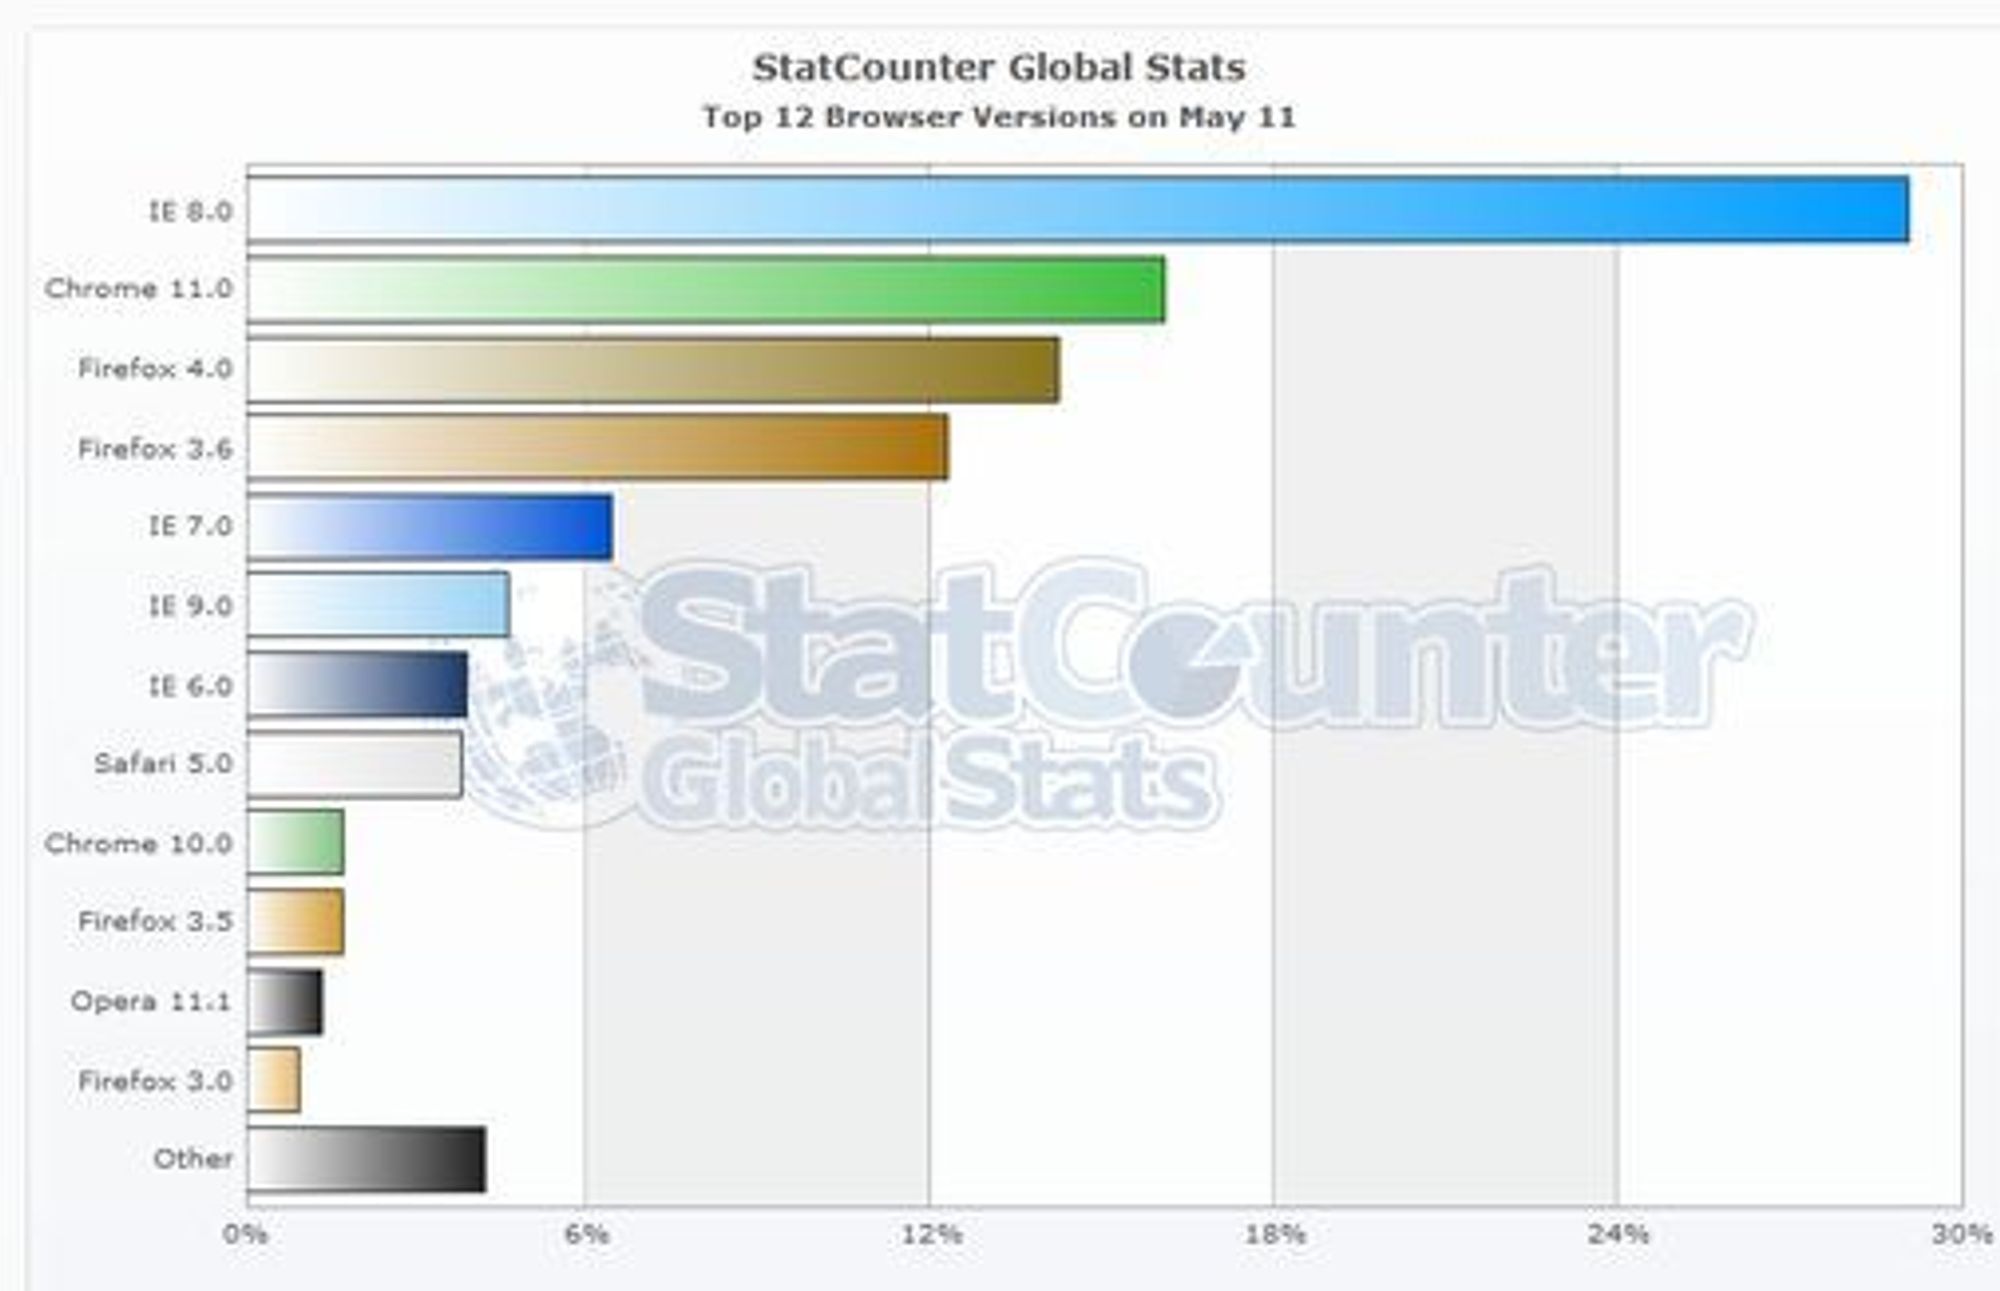 Mest brukte nettleserversjoner i mai 2011 ifølge målingene til StatCounter.